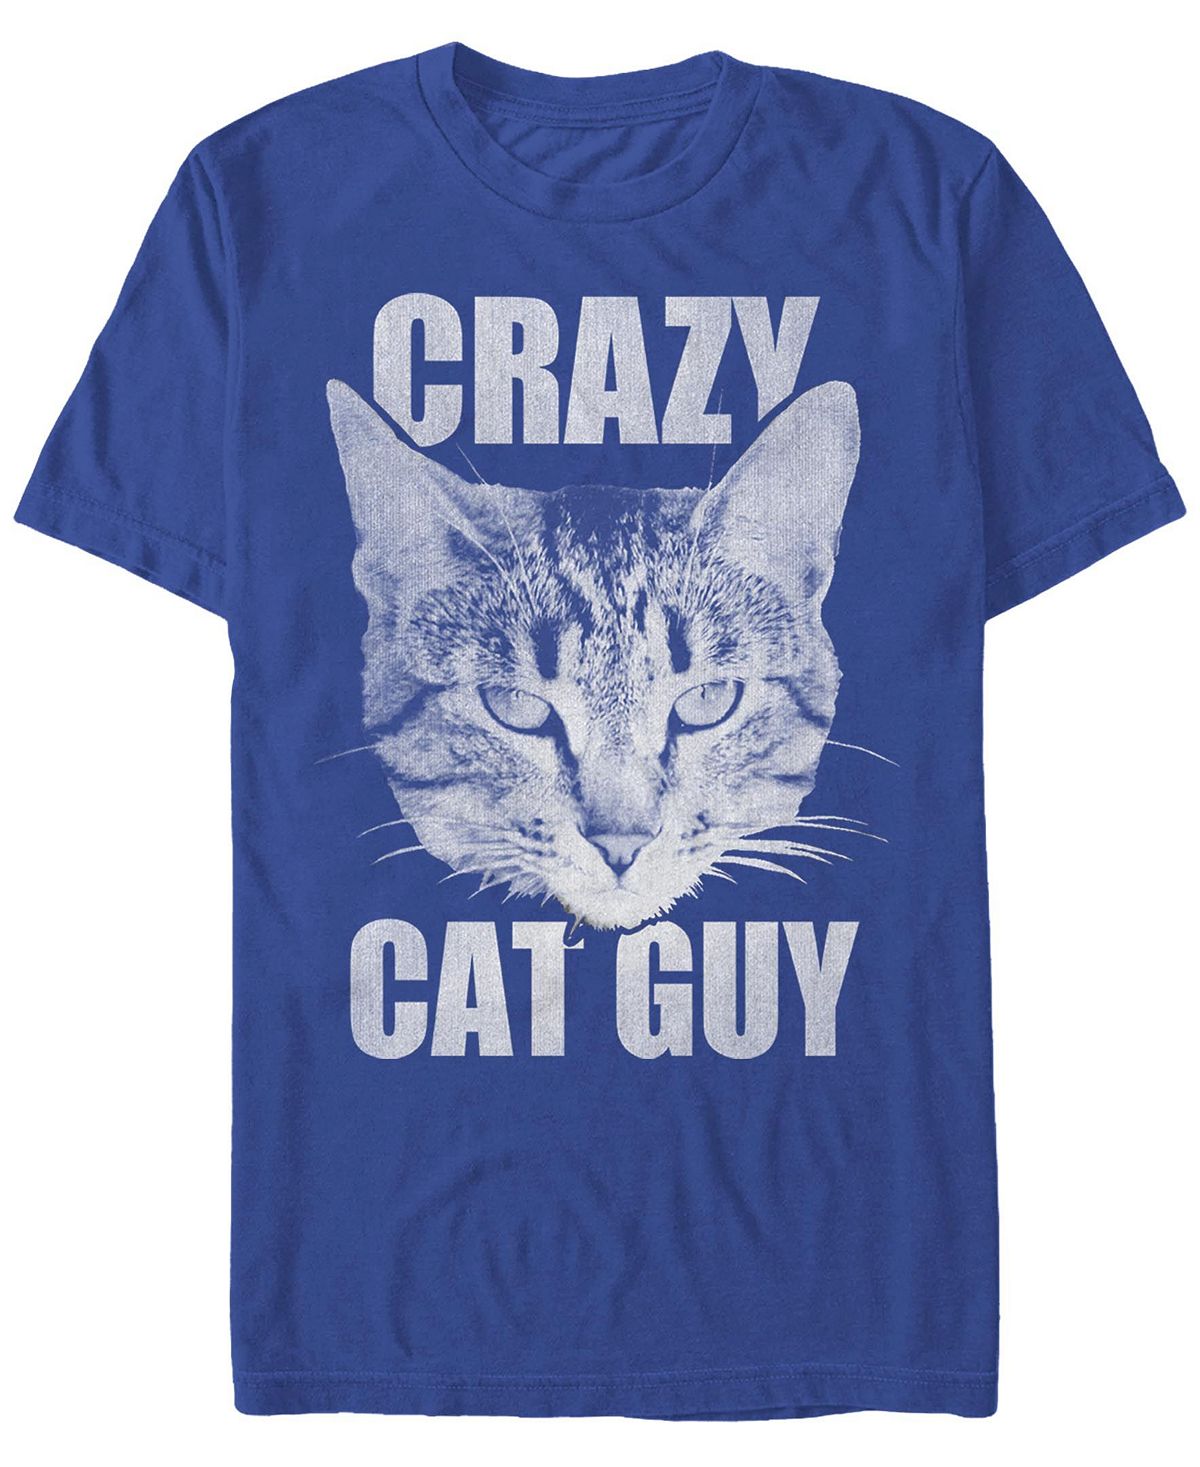 Мужская футболка с круглым вырезом и короткими рукавами cat guy Fifth Sun фотографии